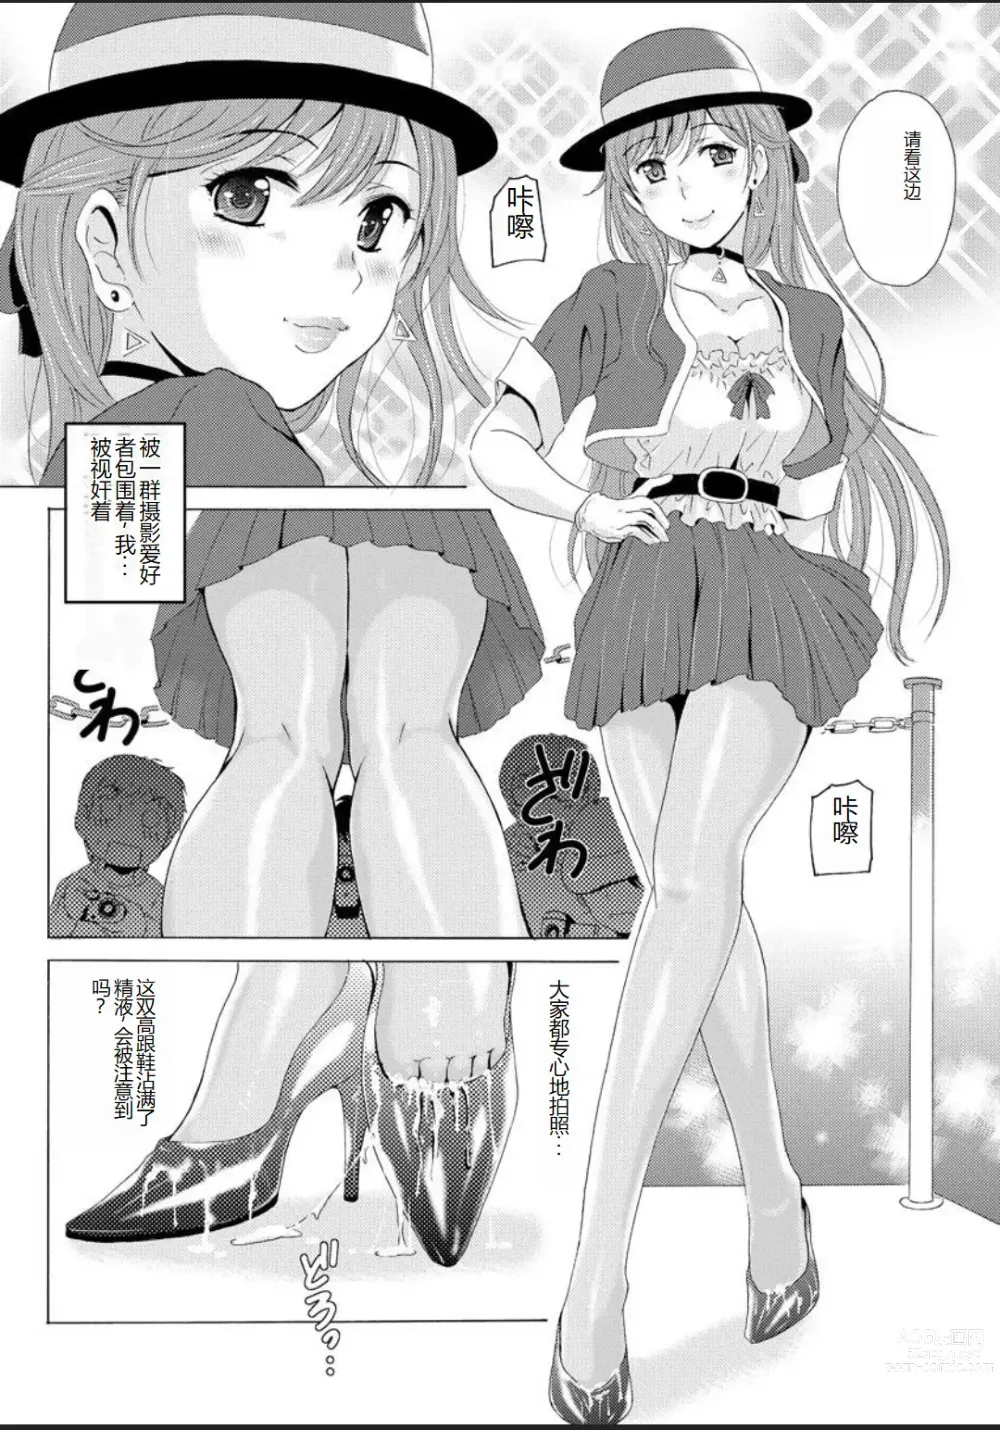 Page 12 of manga Seihuku Bikyaku 5 ～Ibento Konpanion Risa no Mu Re Ta Tizyo Pansuto